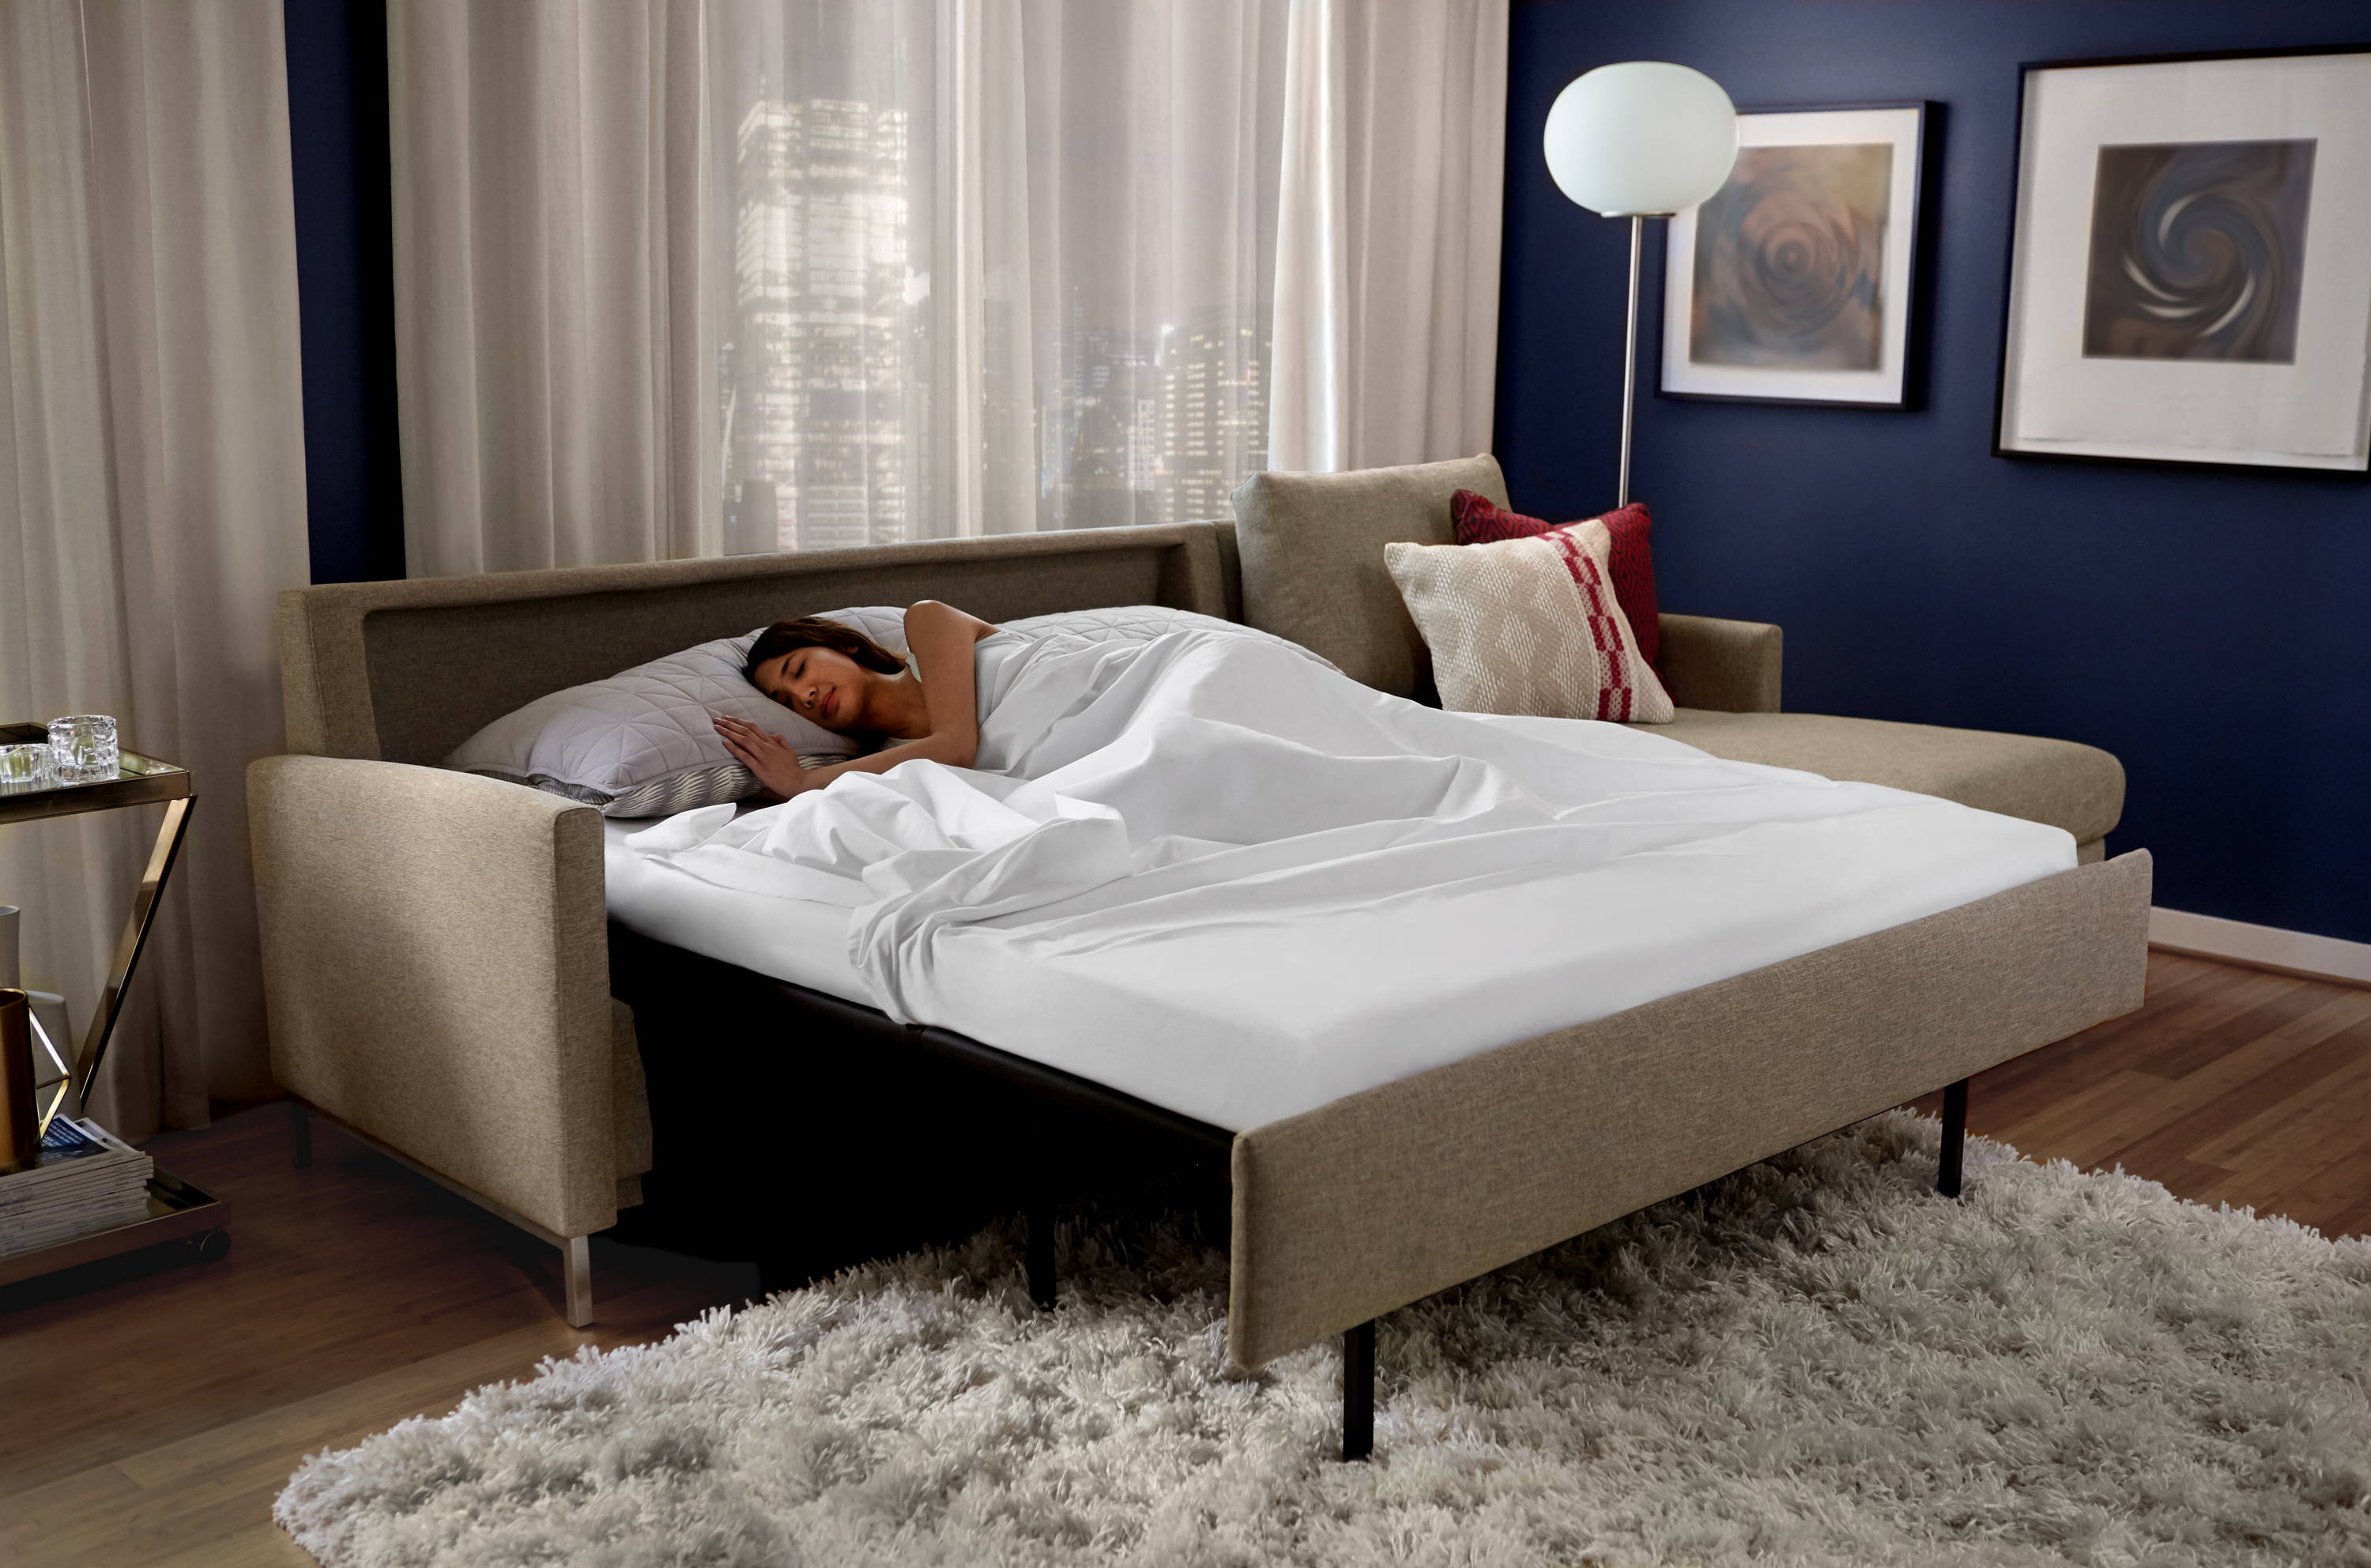 Comfort Sleeper Sleep Sofa Line From